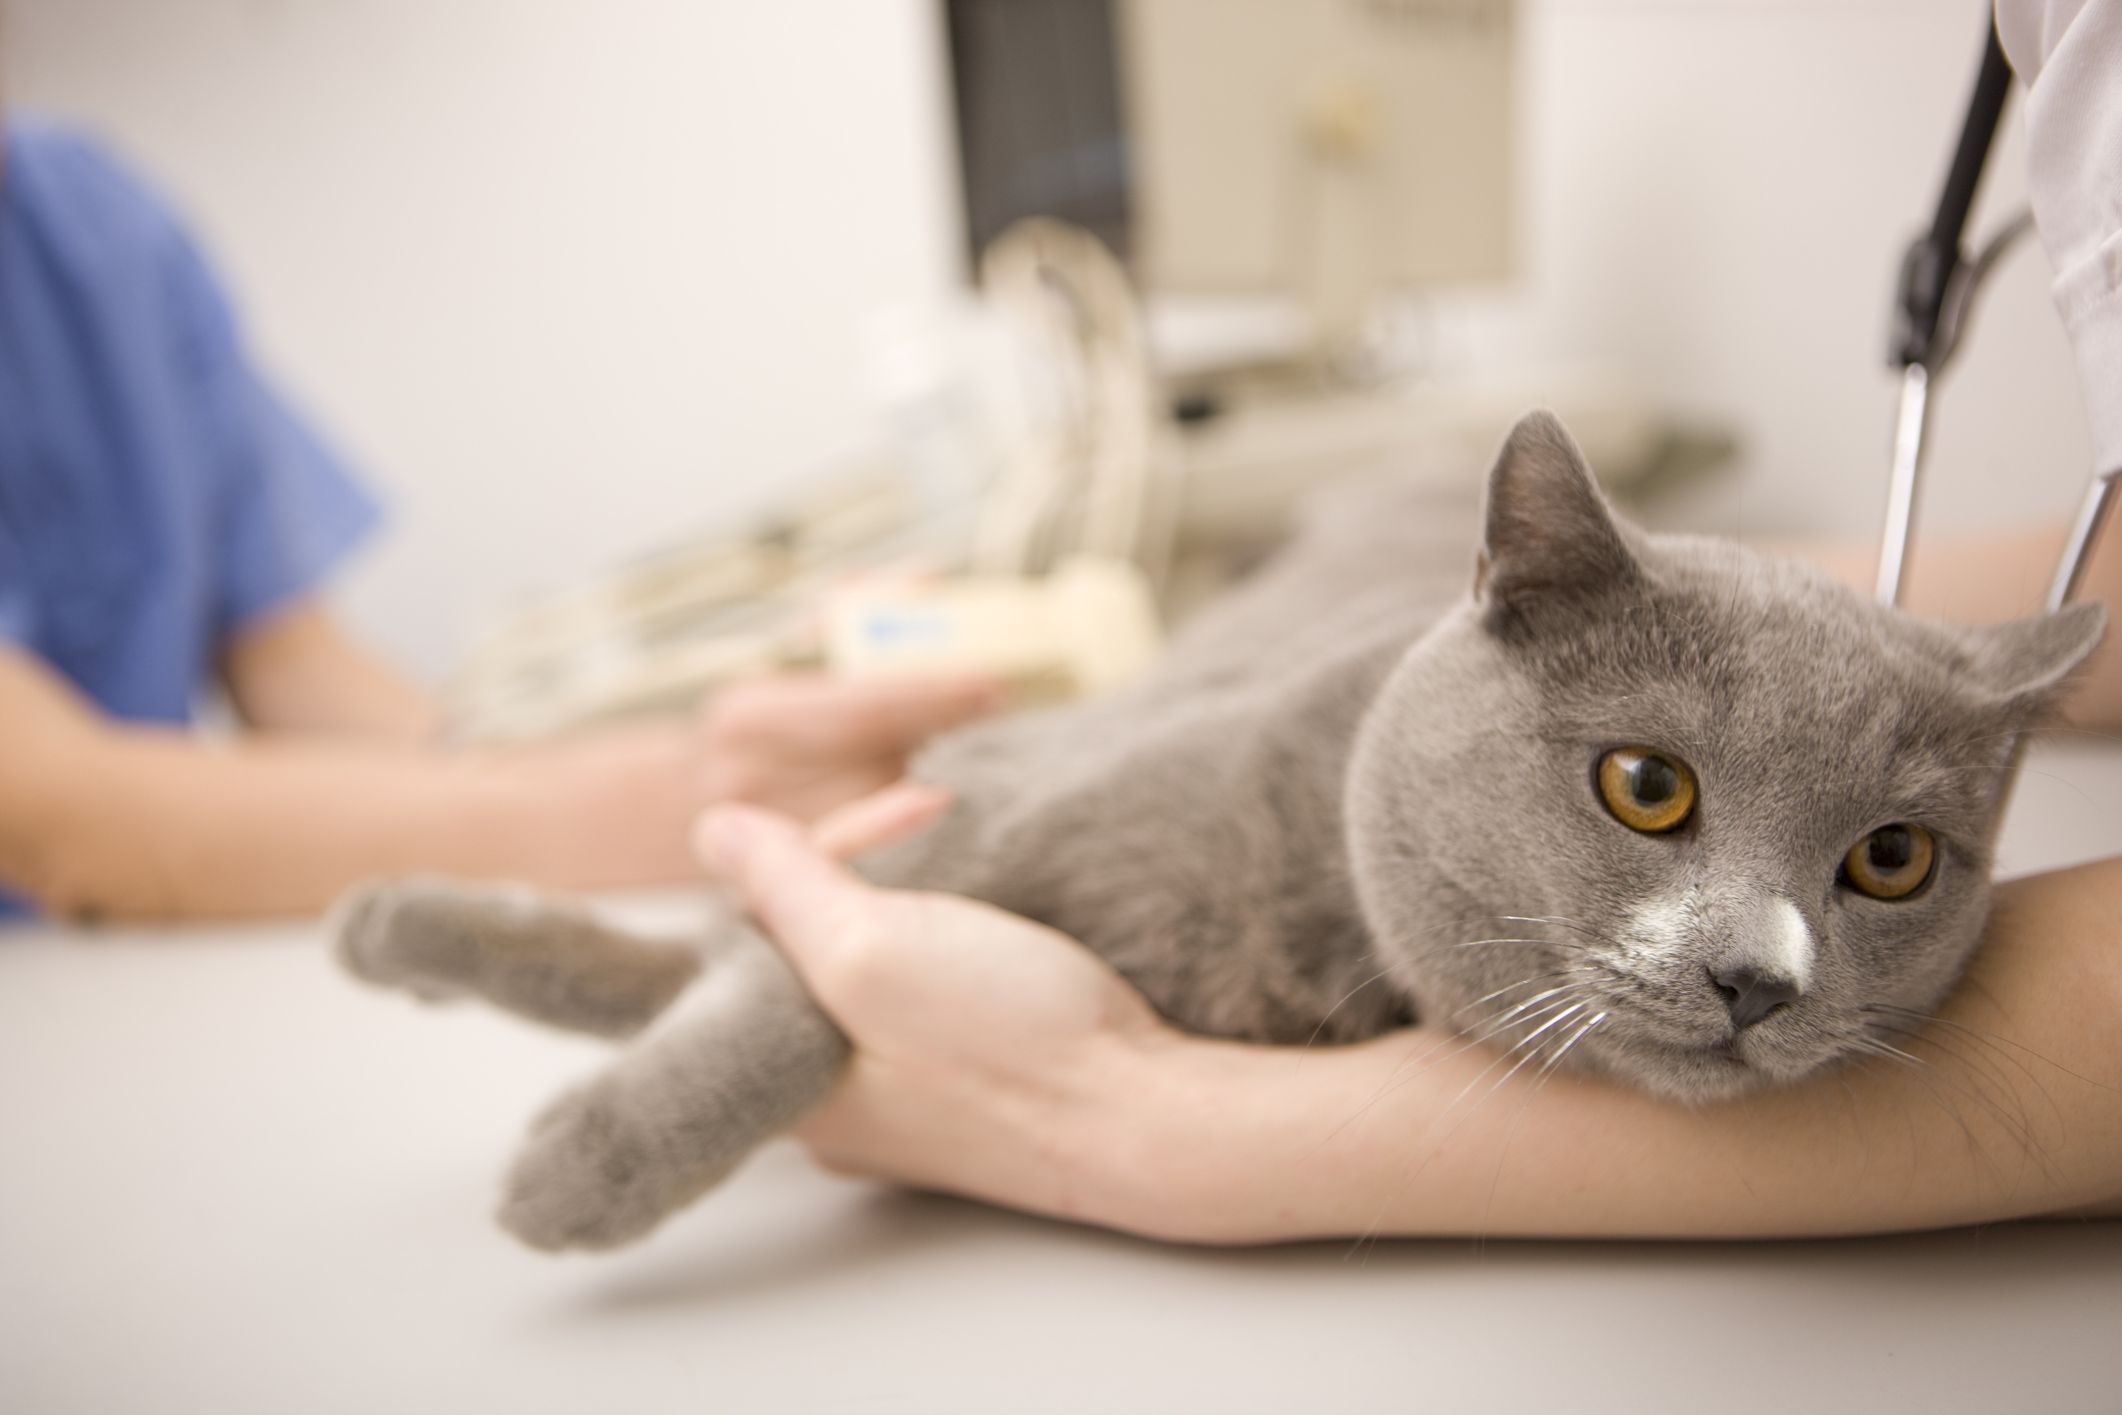 Cat getting a vet exam